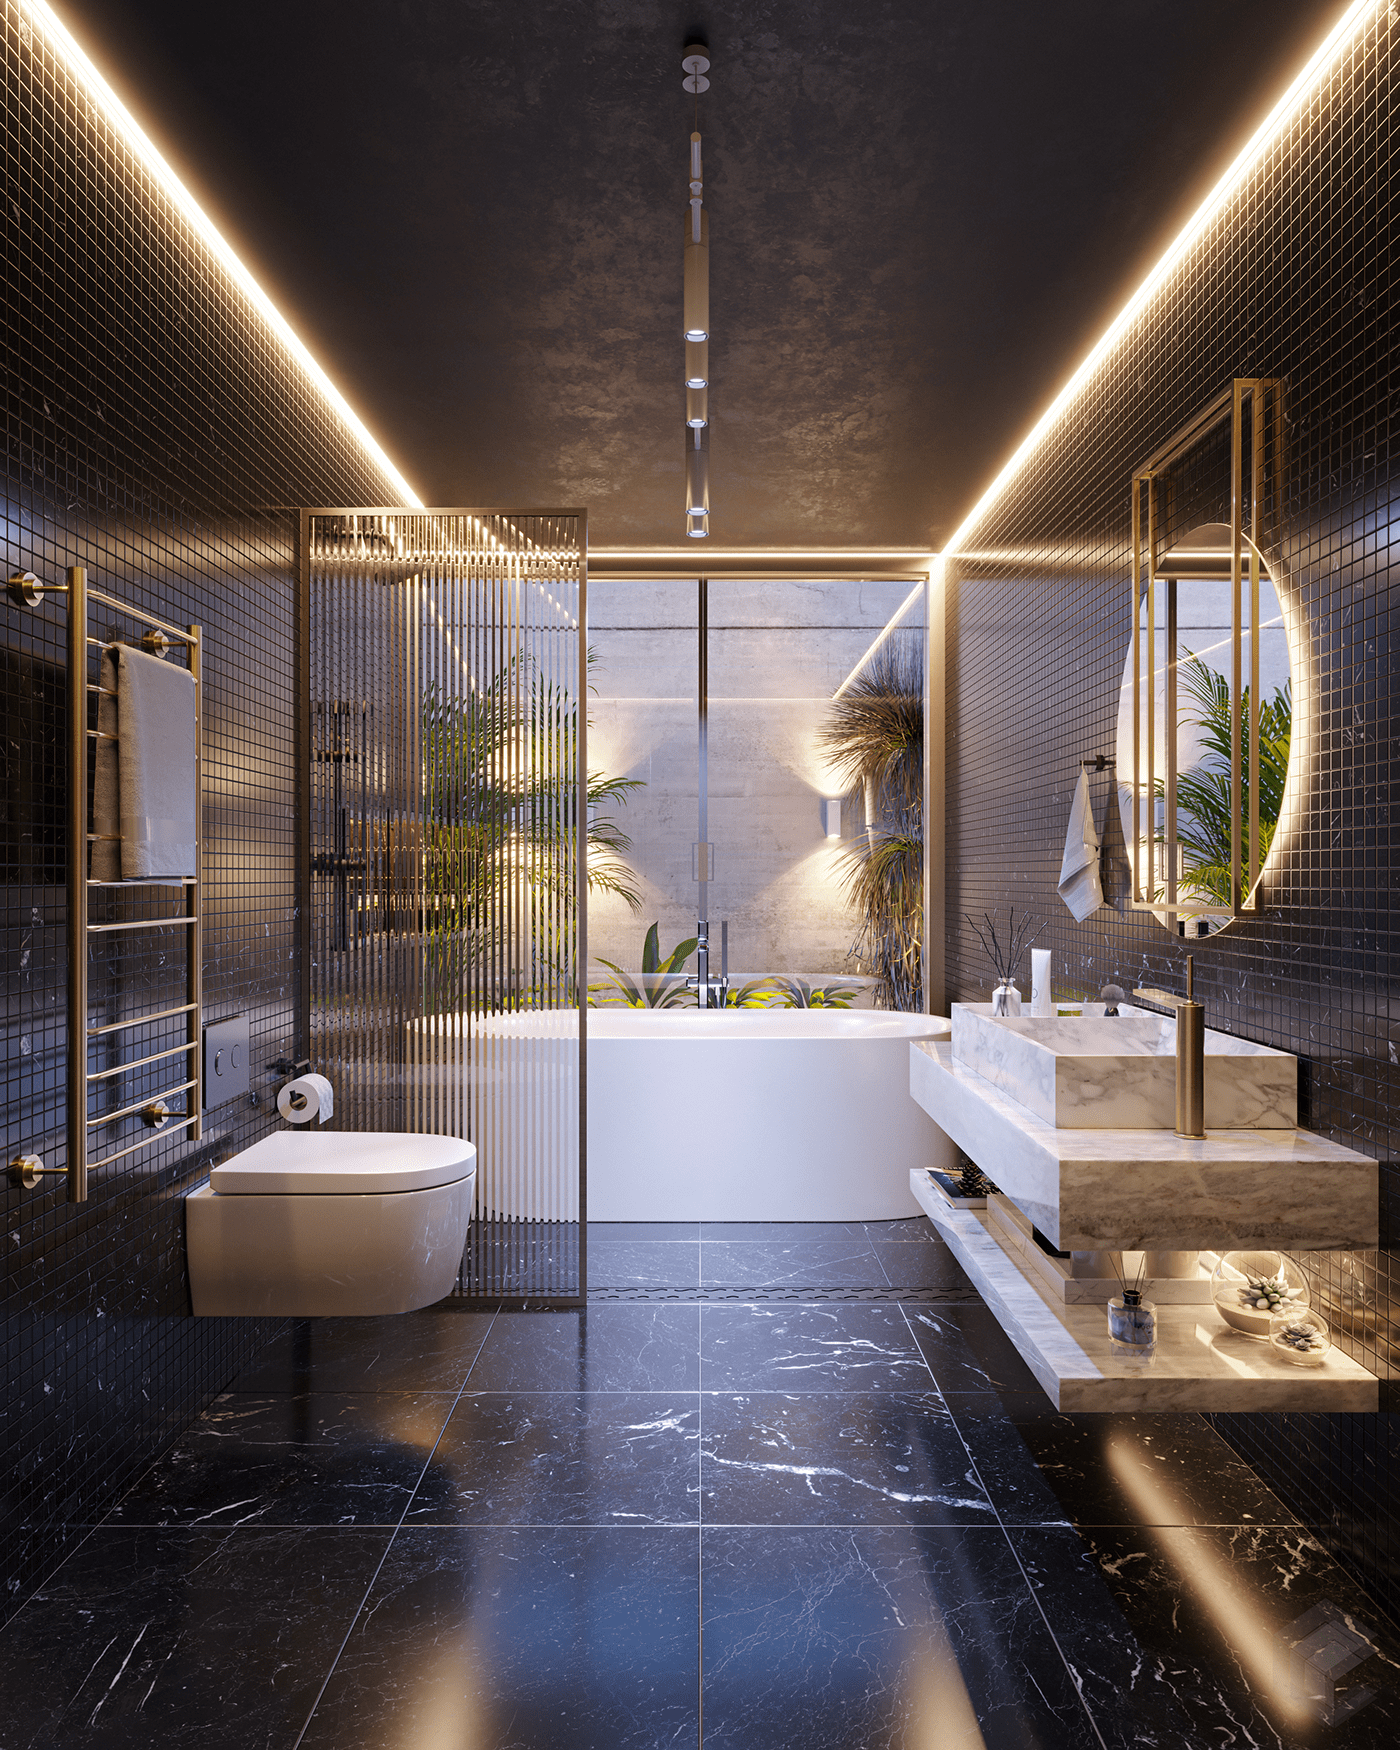 bathroom black design Interior archtecture archviz CGI